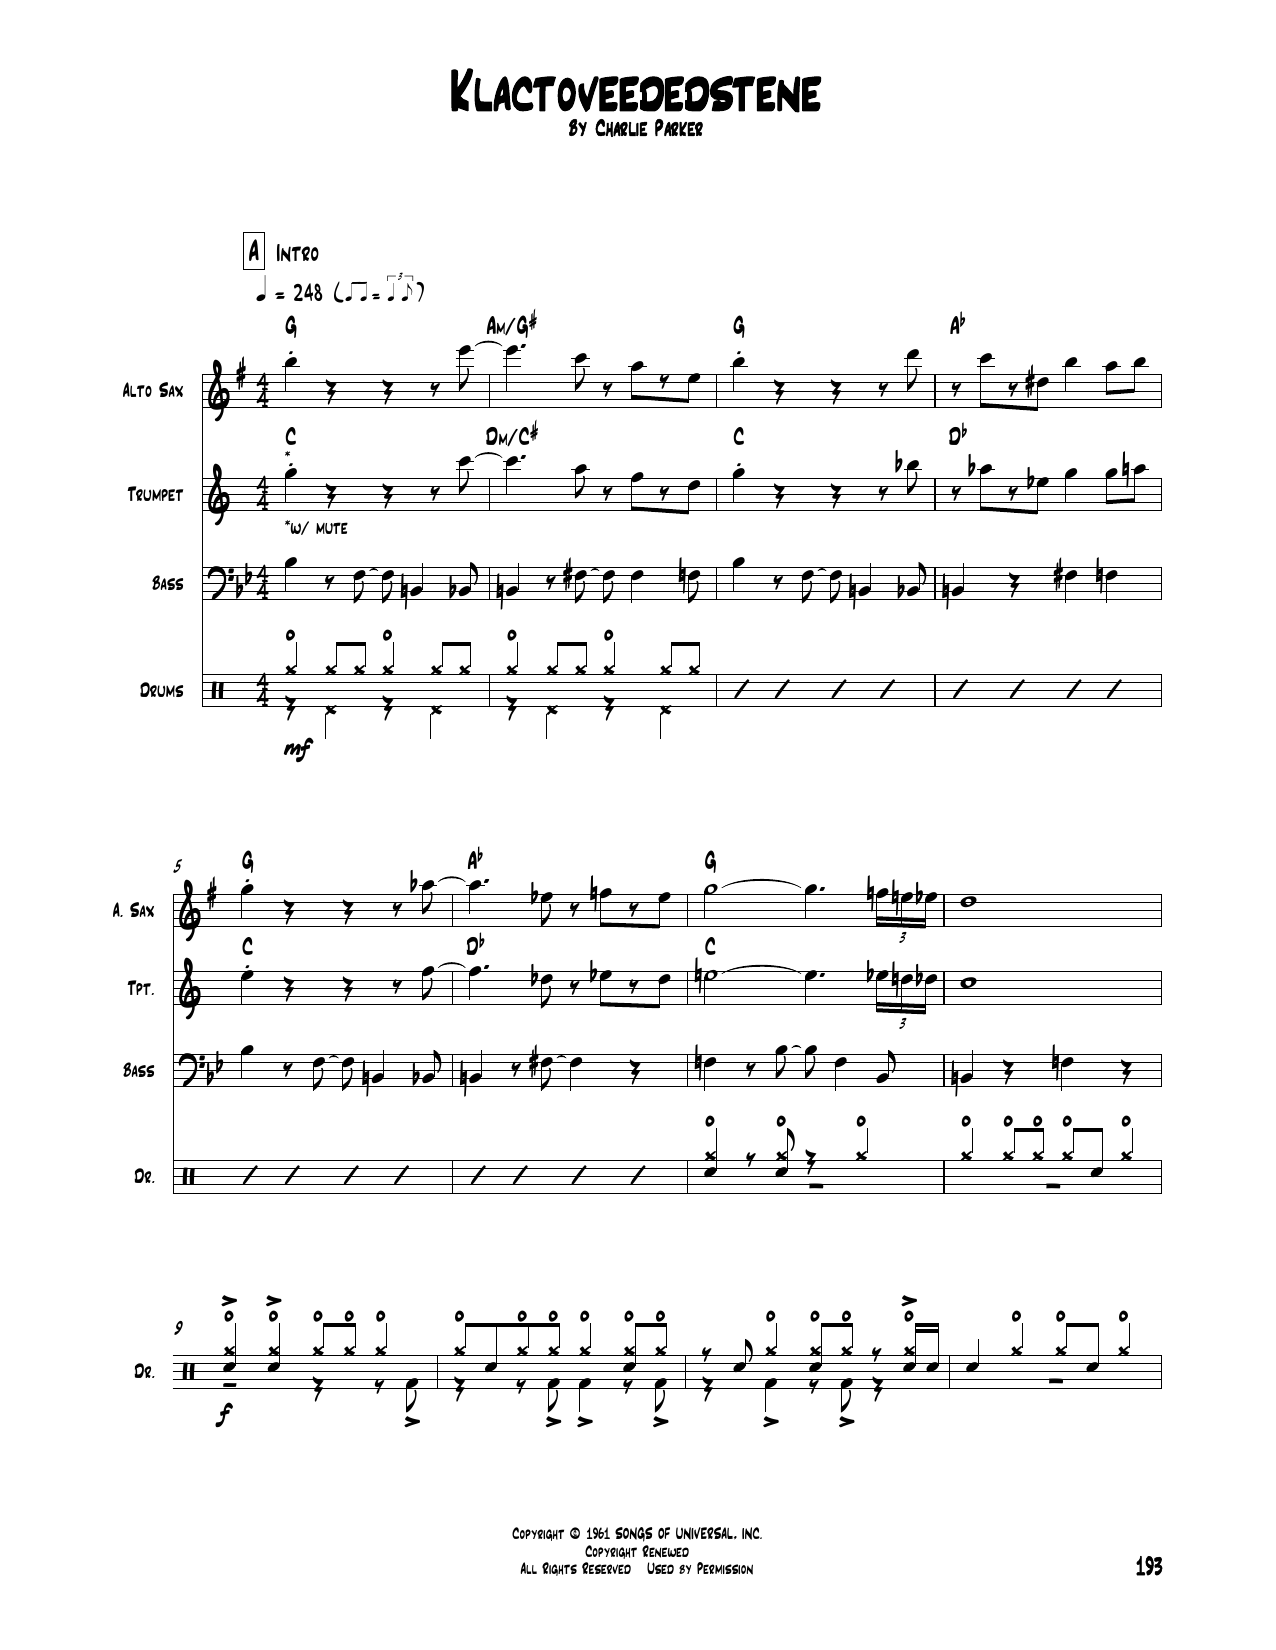 Charlie Parker Klactoveededstene Sheet Music Notes & Chords for Transcribed Score - Download or Print PDF